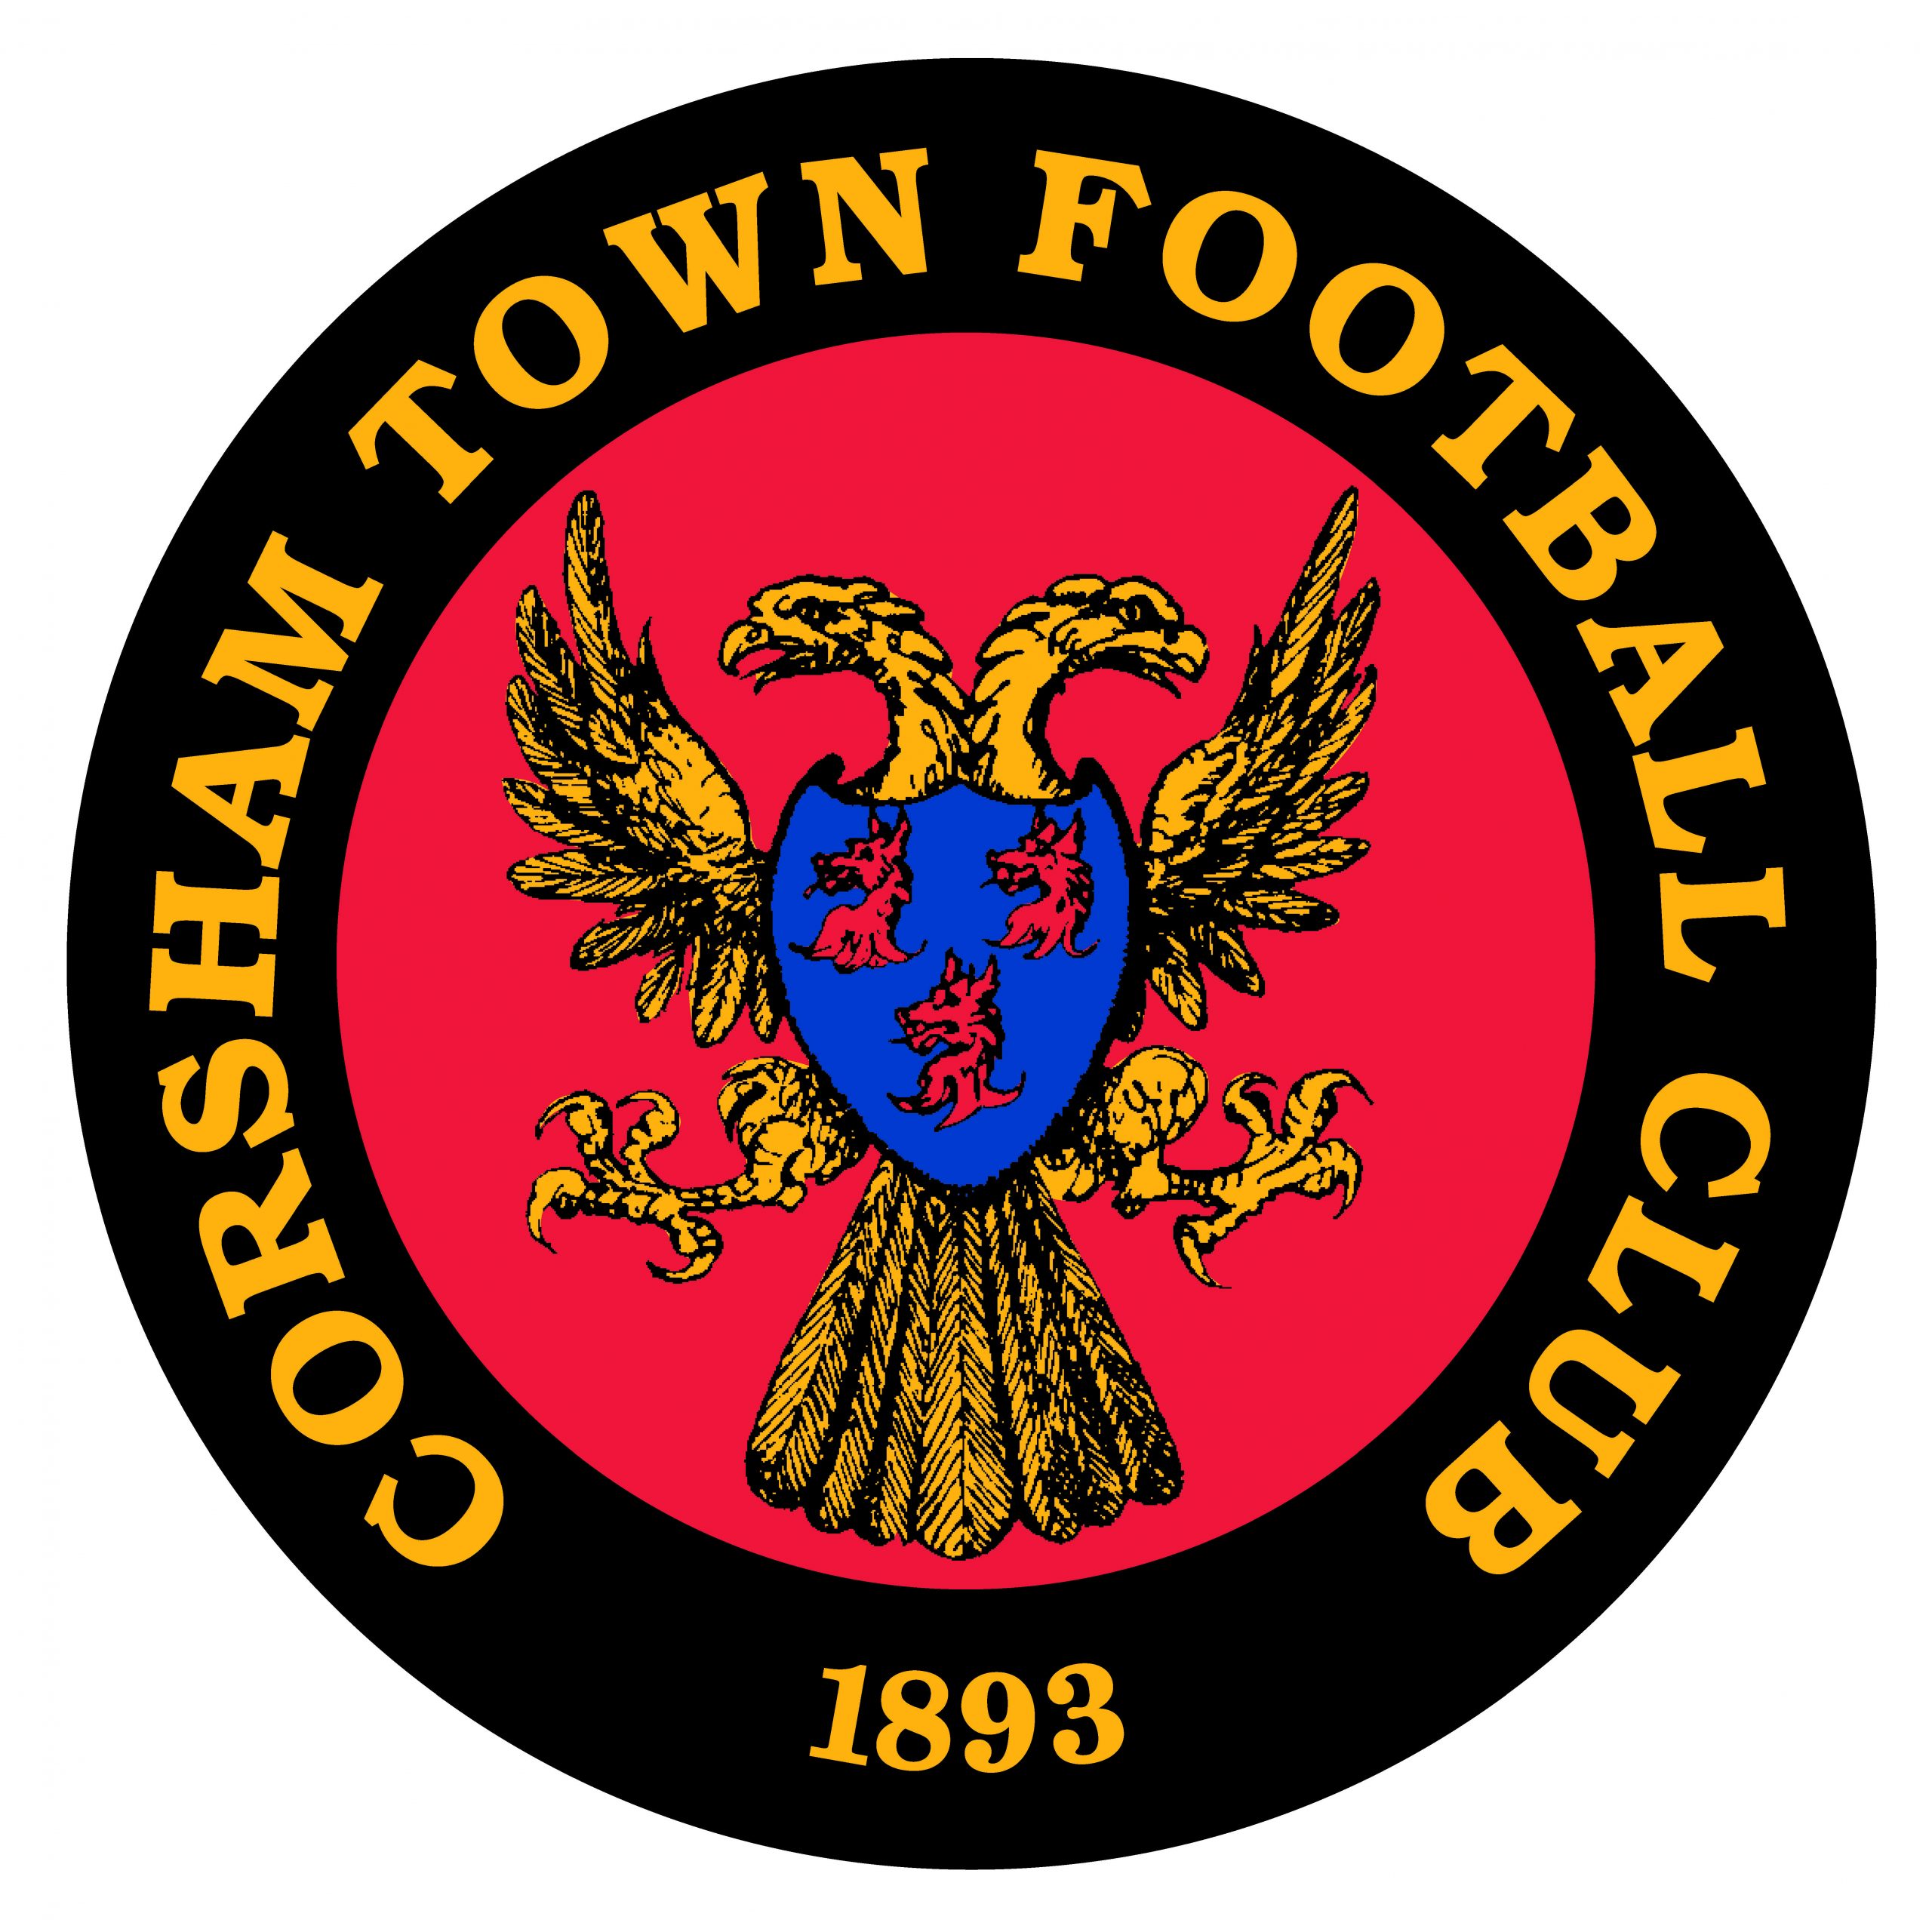 Corsham Town Football Club Logo